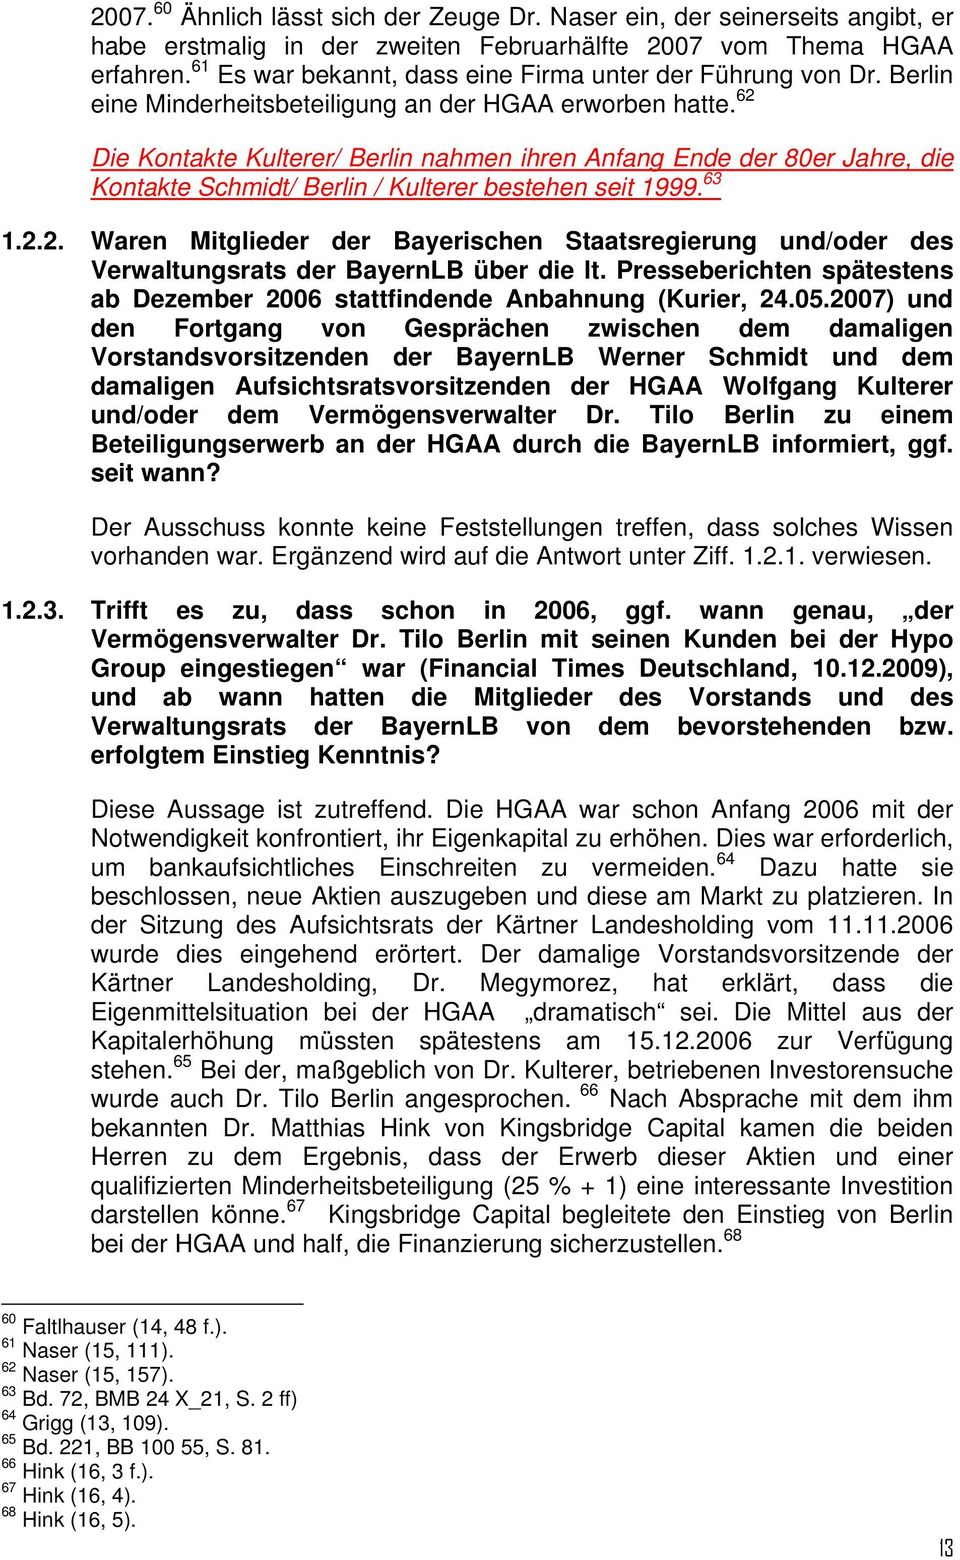 62 Die Kontakte Kulterer/ Berlin nahmen ihren Anfang Ende der 80er Jahre, die Kontakte Schmidt/ Berlin / Kulterer bestehen seit 1999. 63 1.2.2. Waren Mitglieder der Bayerischen Staatsregierung und/oder des Verwaltungsrats der BayernLB über die lt.